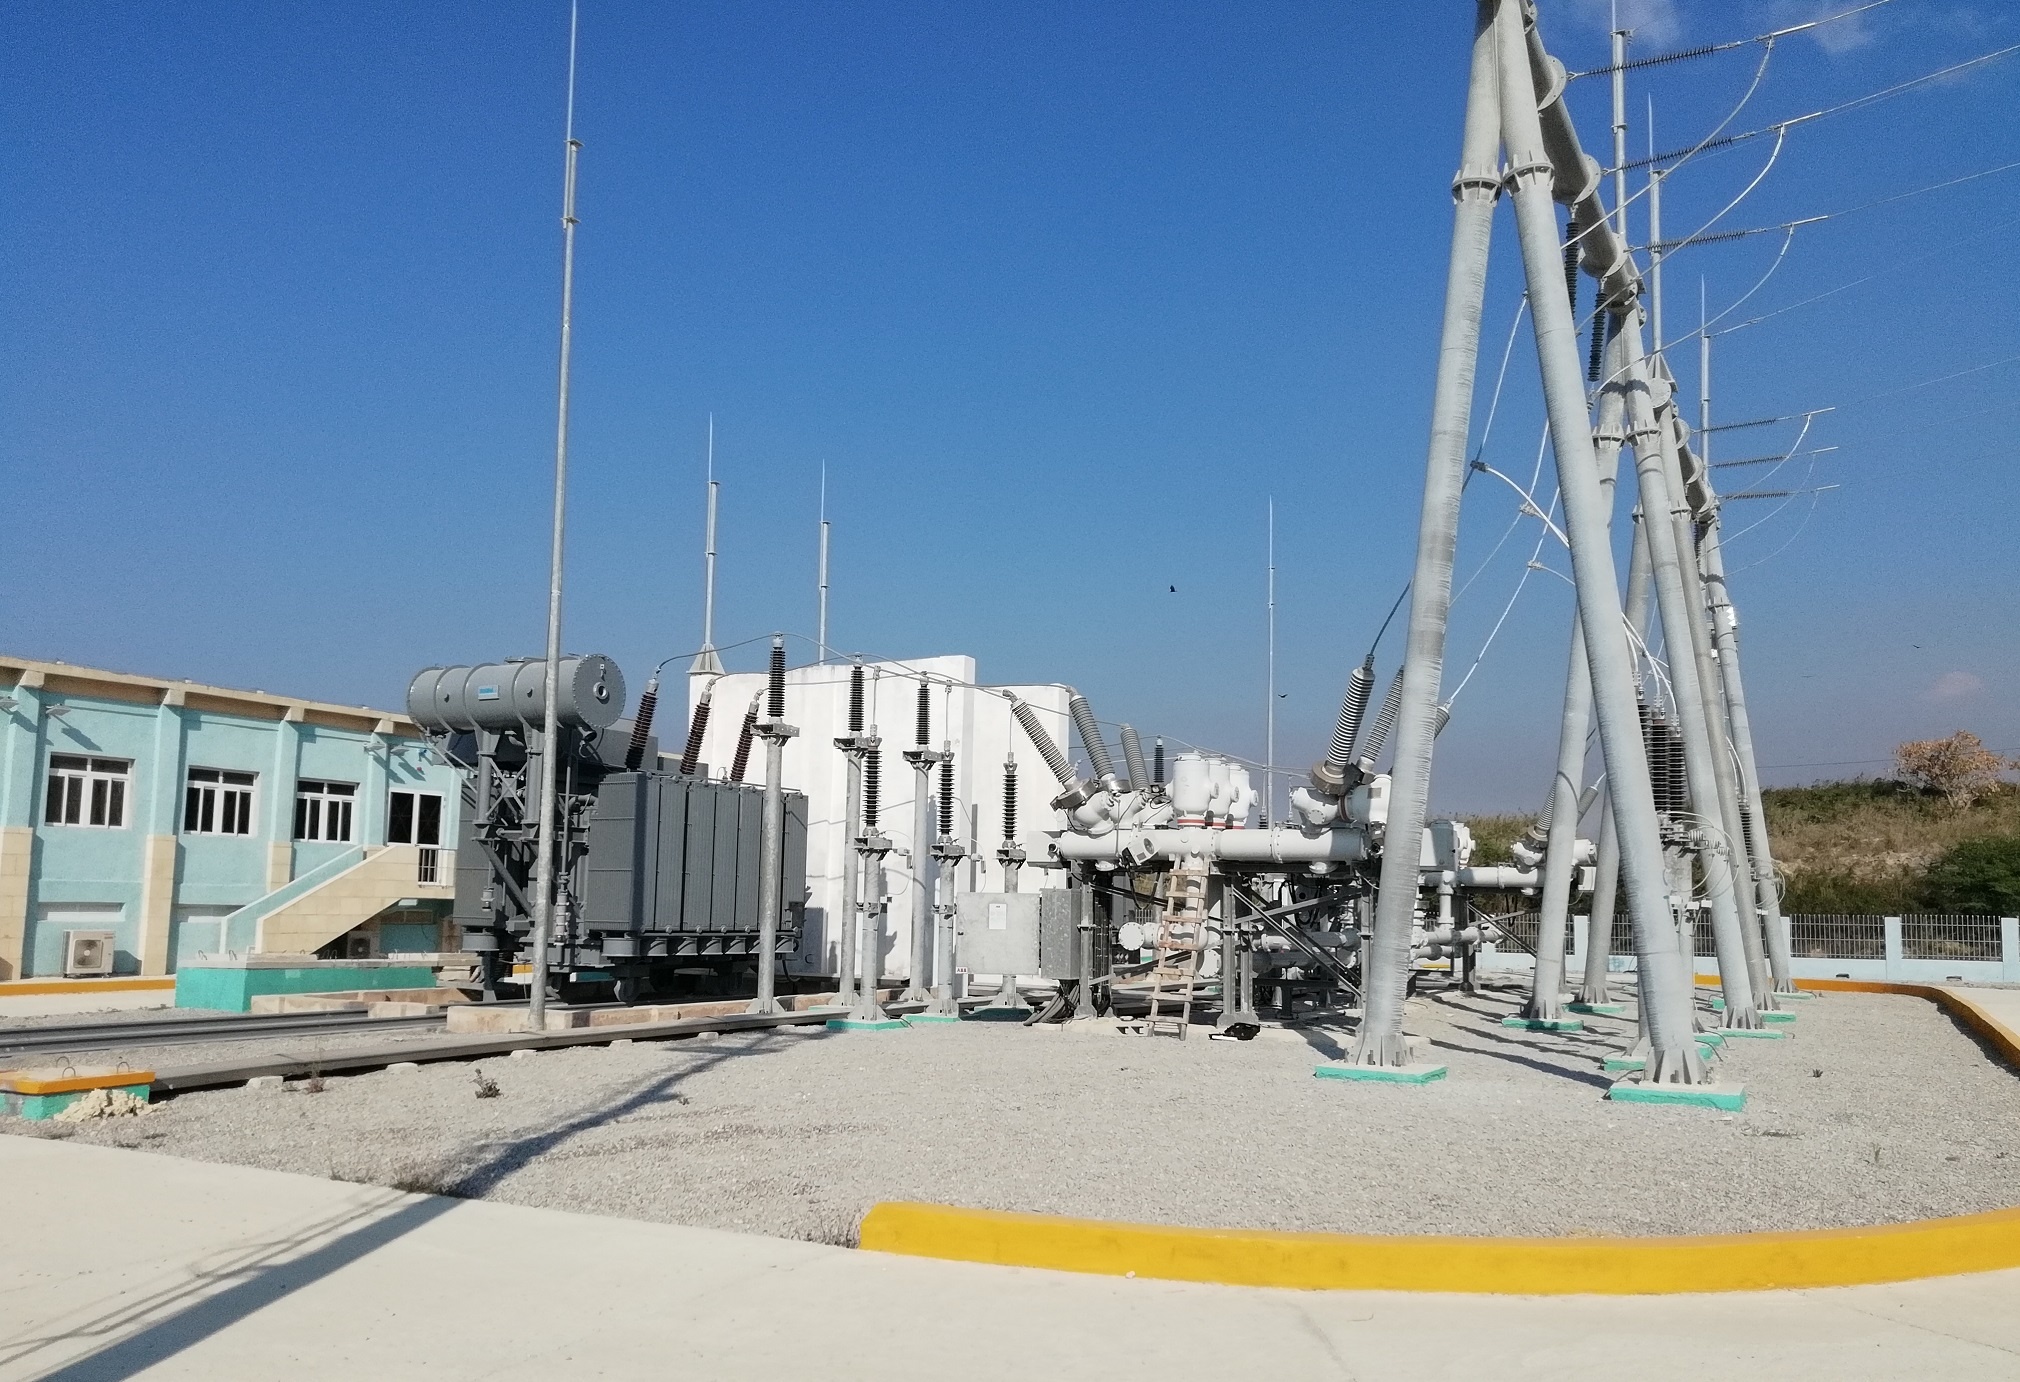 Subestación eléctrica de alta tensión para el polígono industrial Artemisa, Cuba